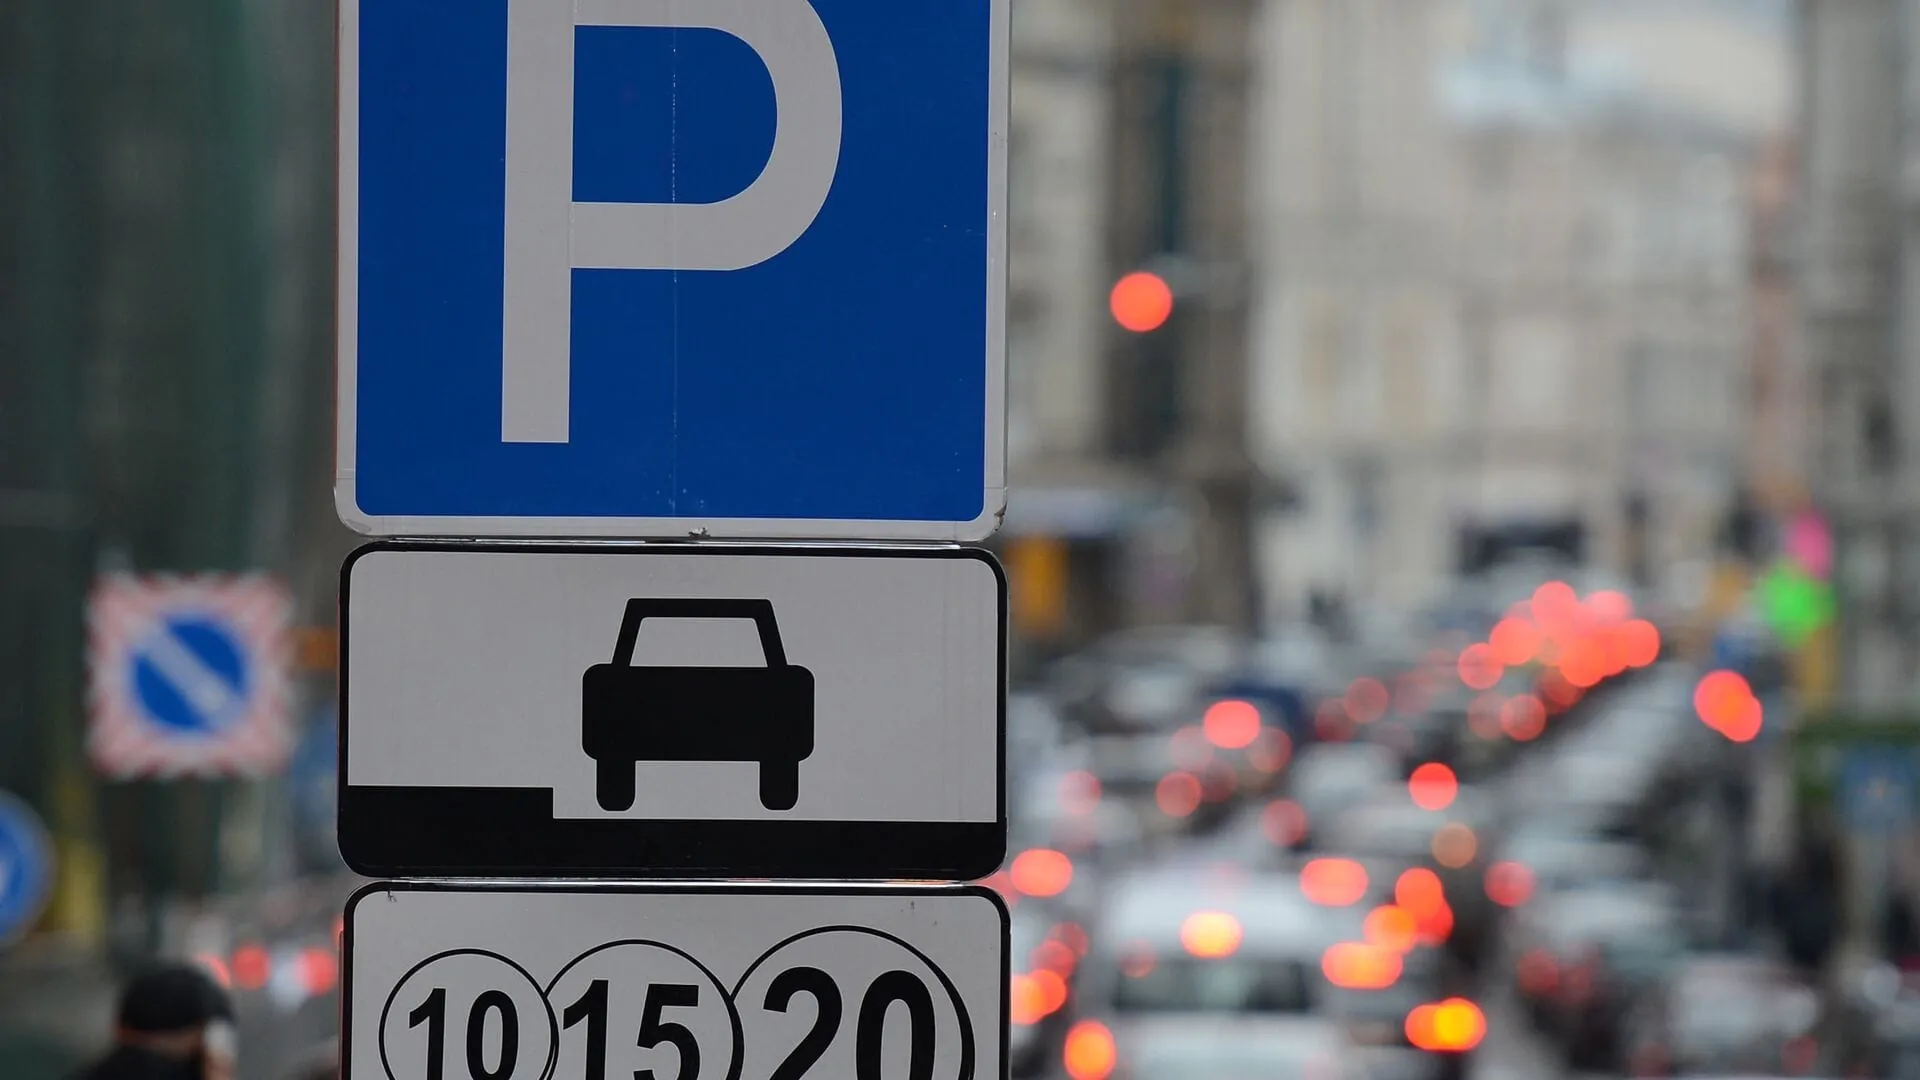 В Минске станет больше платных парковок. Где их собираются ввести?